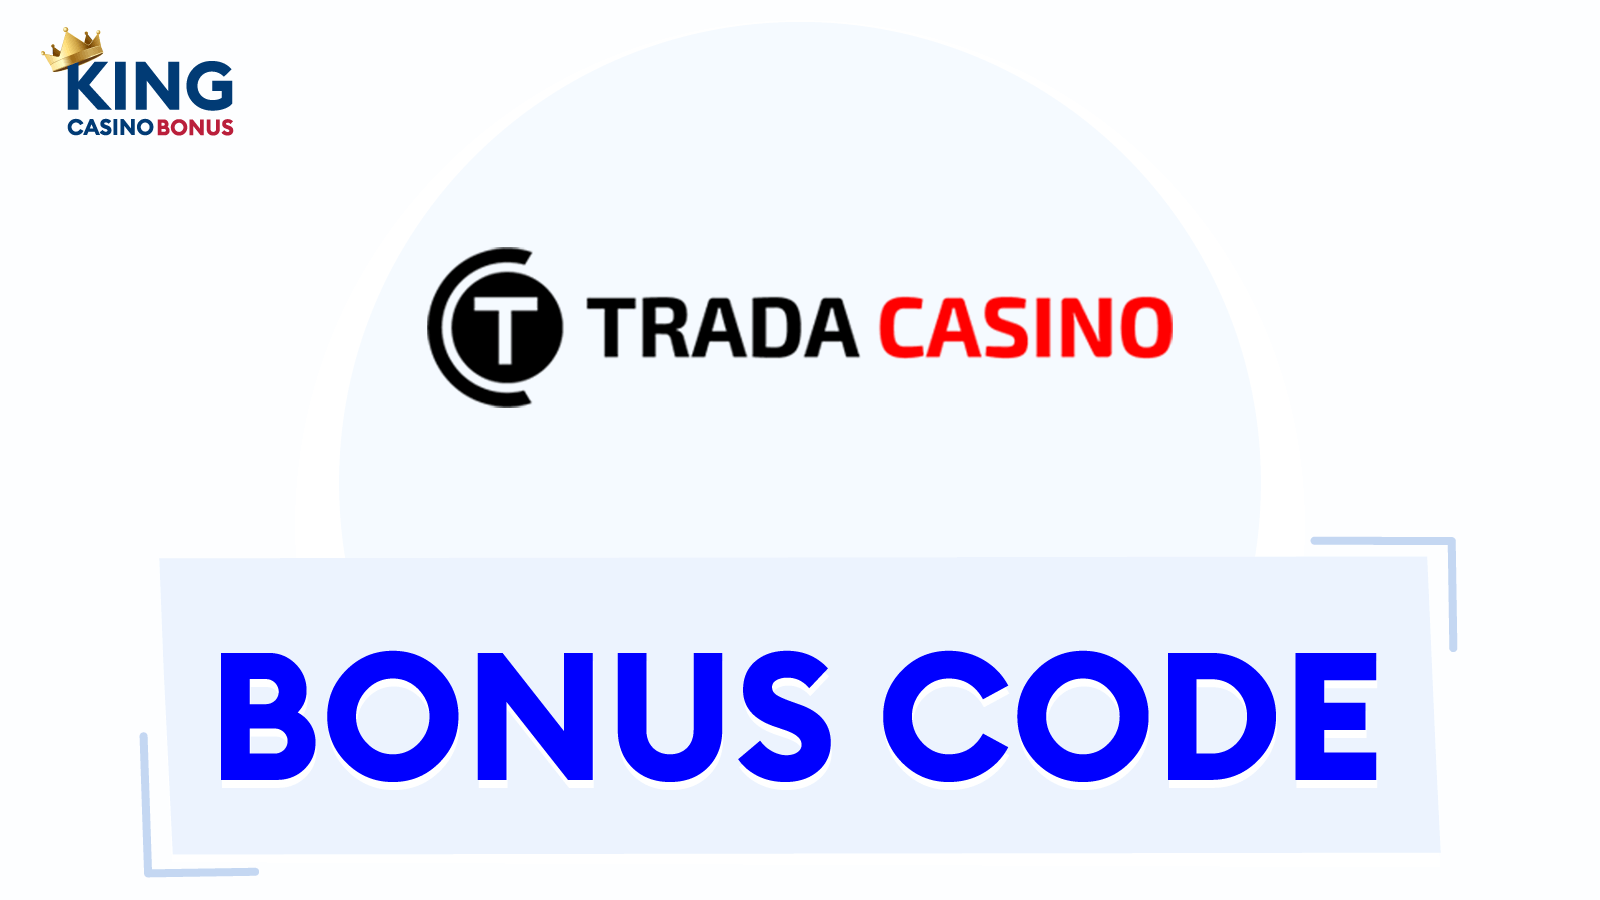 Trada Casino 50 free spins no deposit bonus on registration